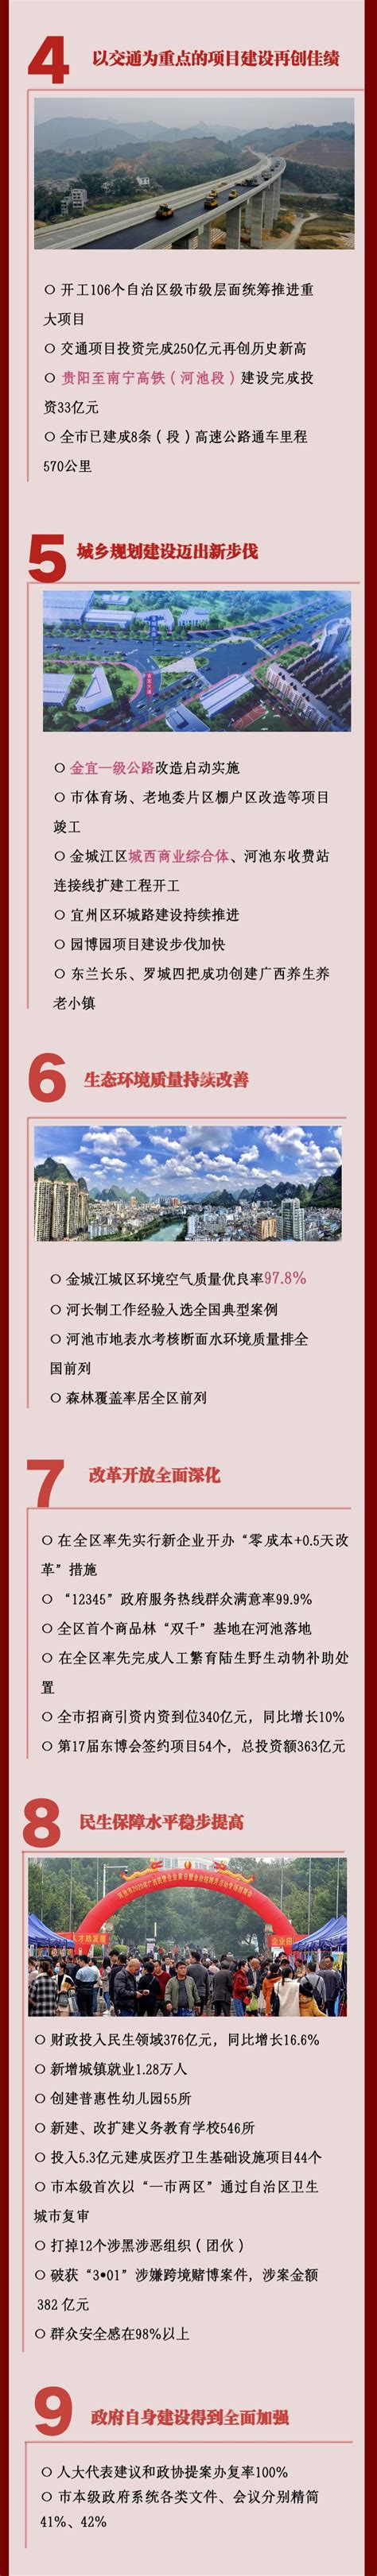 广西河池市召开全市市场监管工作新闻发布会-中国质量新闻网